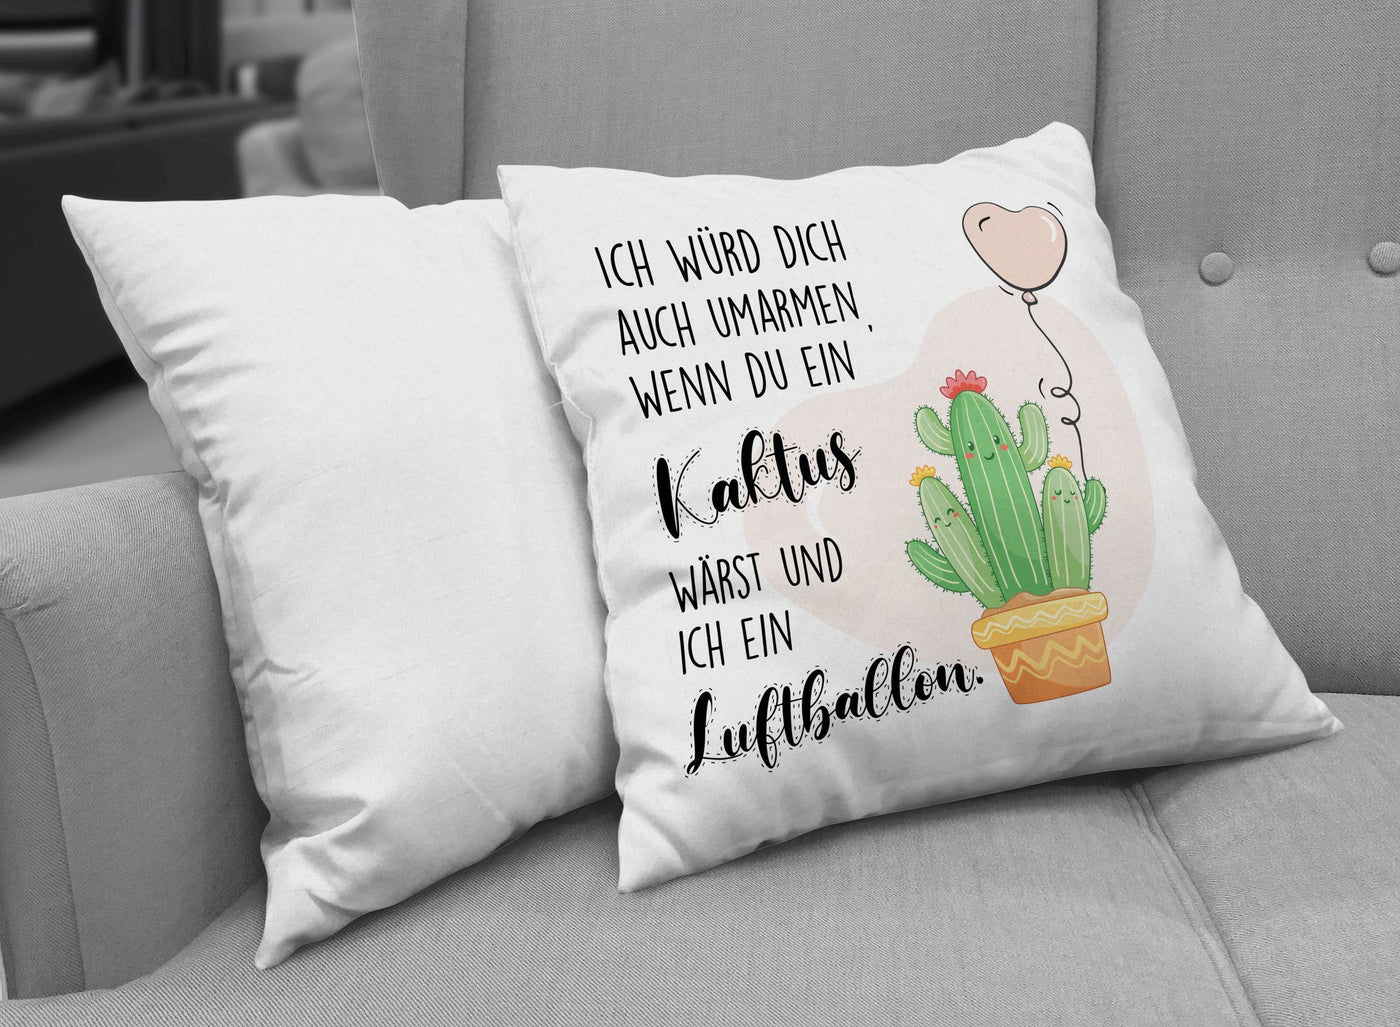 Bild: Kissen - Ich würde Dich auch umarmen, wenn Du ein Kaktuswärst und ich ein Luftballon. Geschenkidee